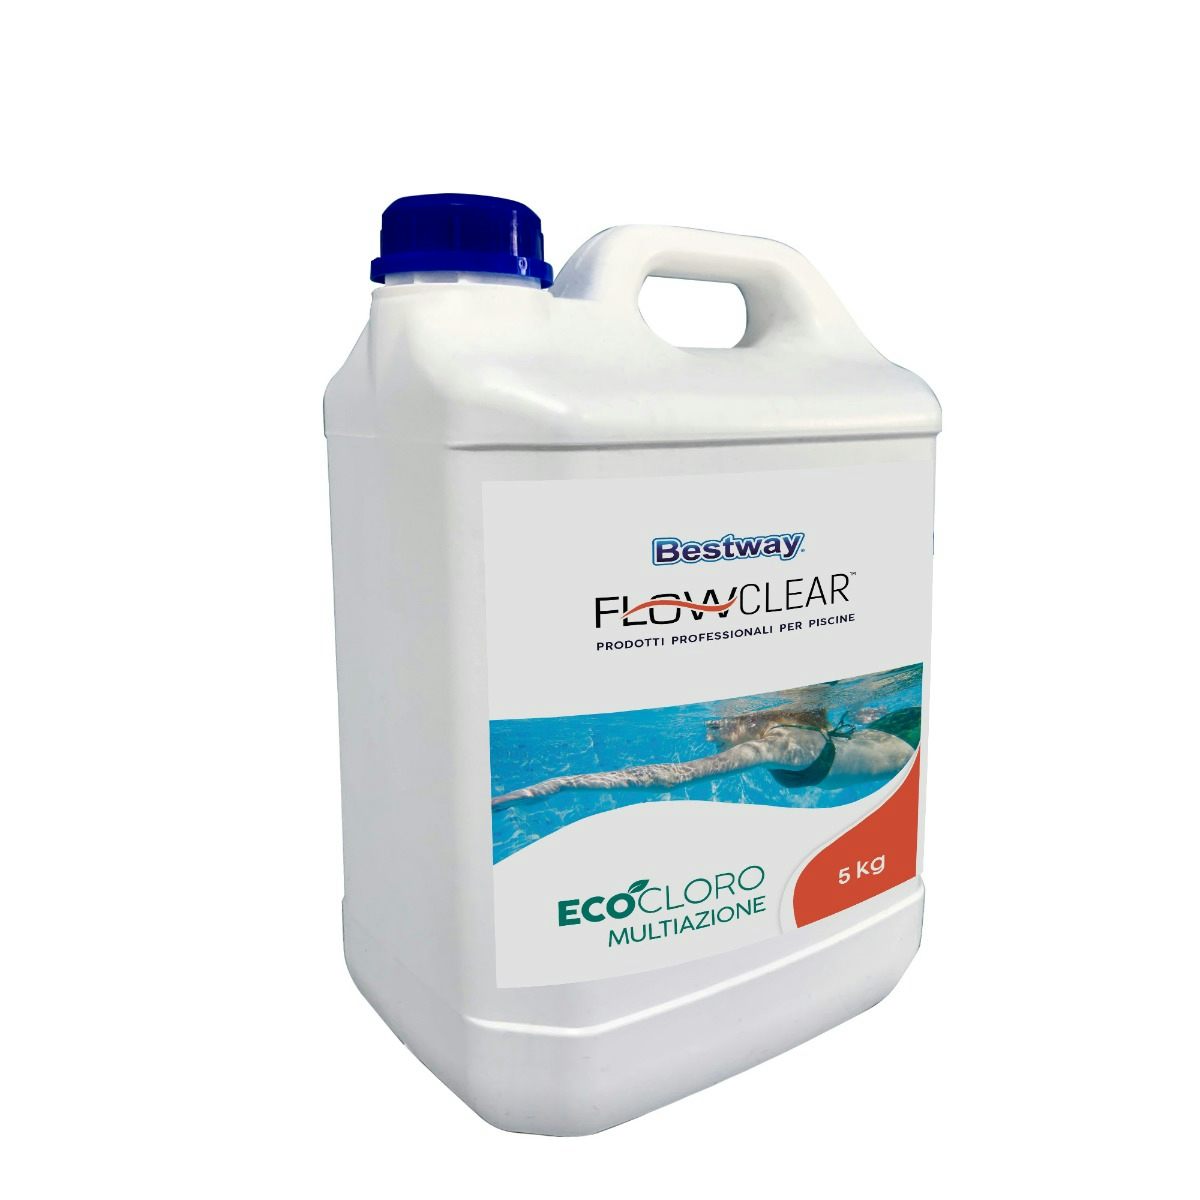 Trattamento chimico dell'acqua Eco-cloro multiazione, 5 kg  Bestway 1